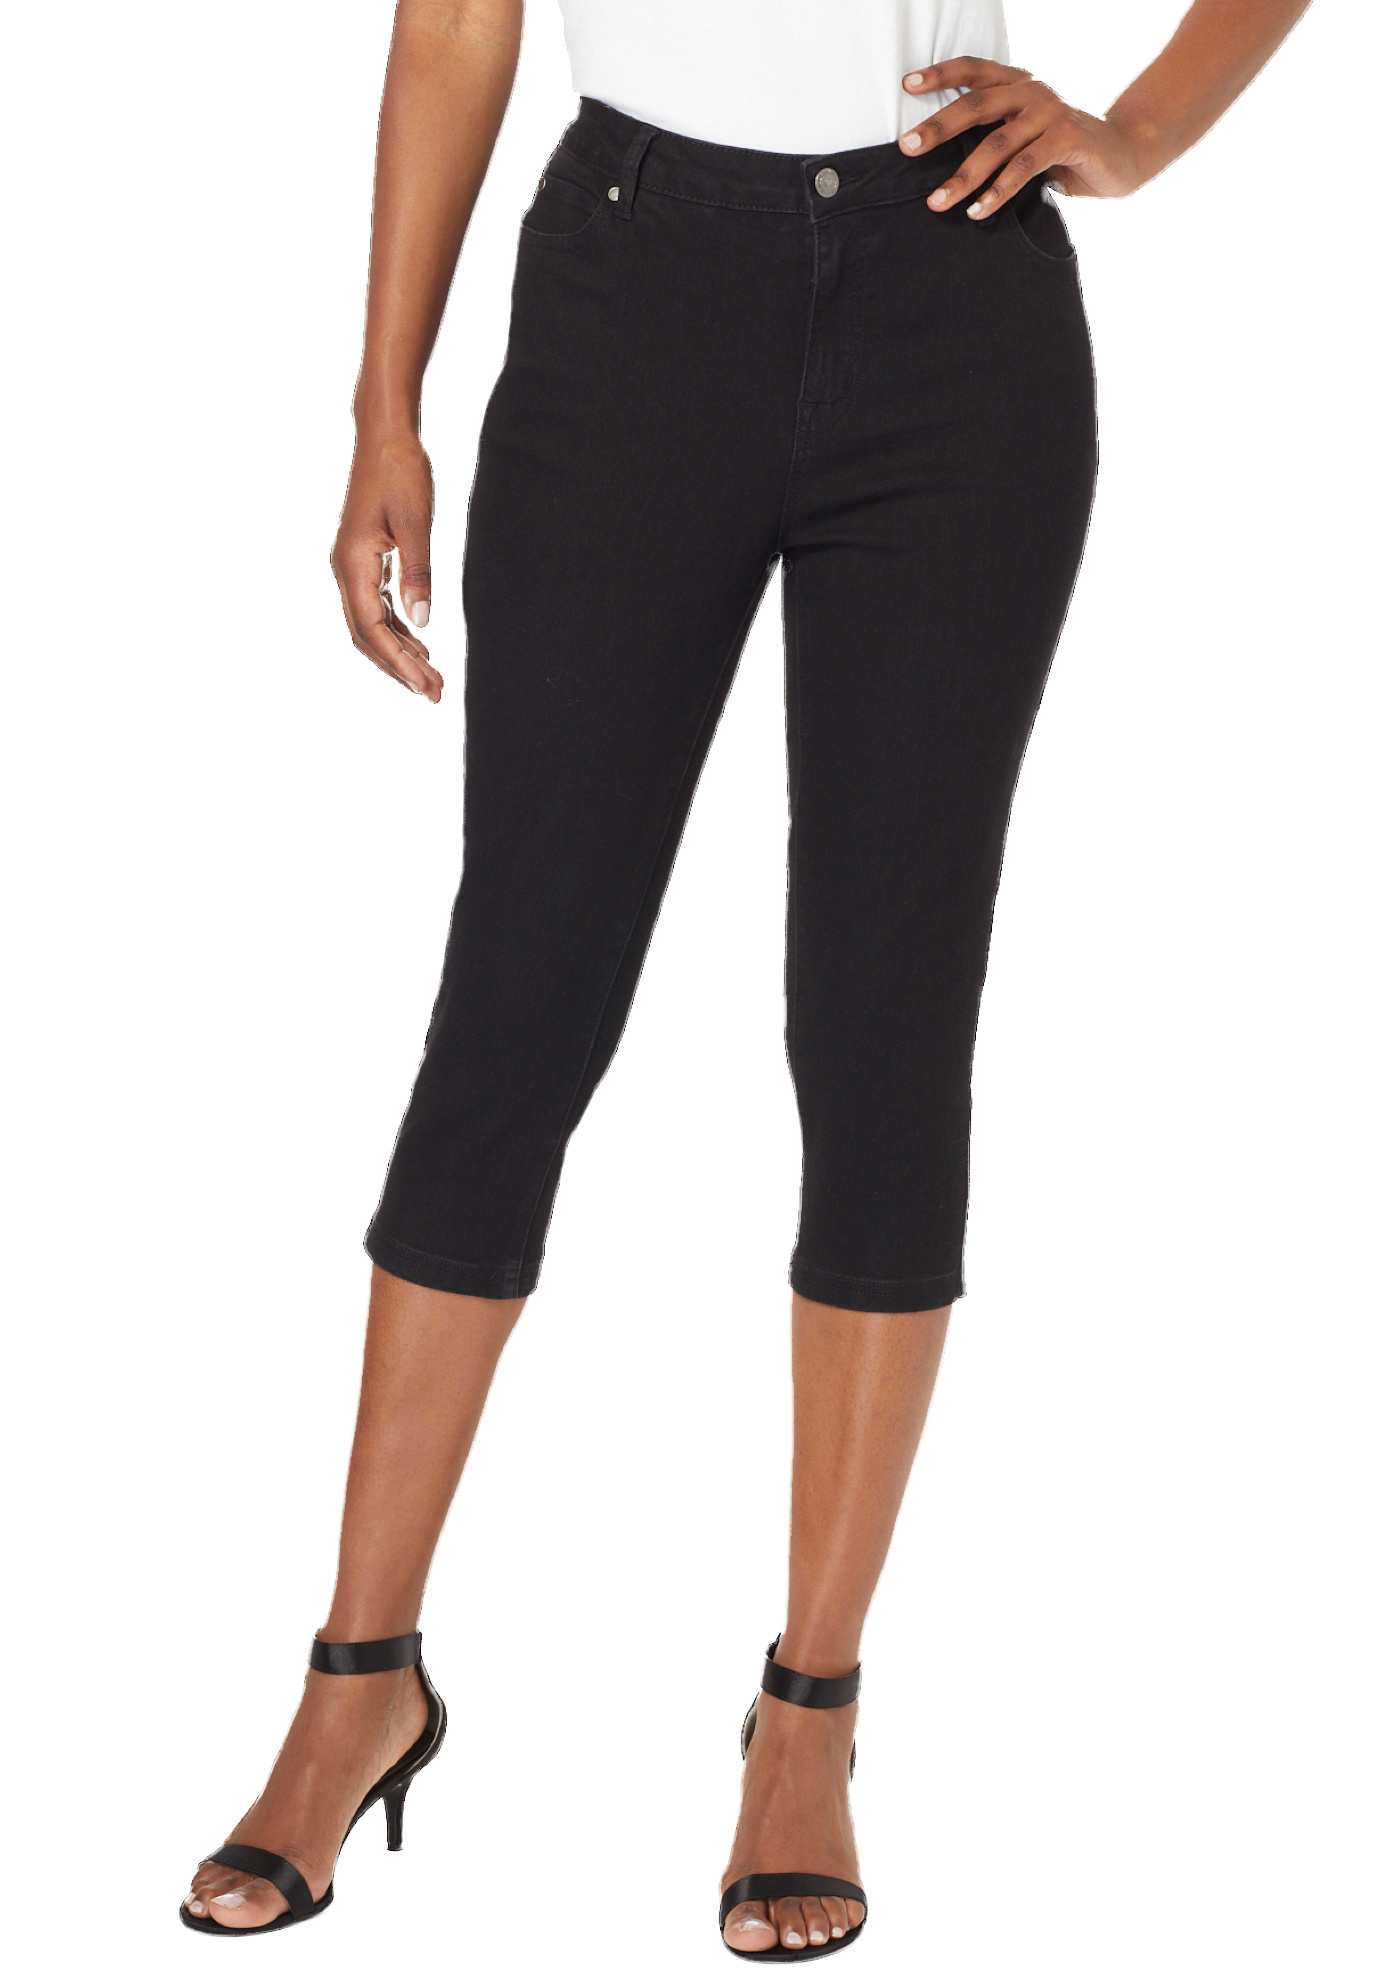 Roaman's Women's Plus Size Invisible Stretch Contour Capri Jean Jeans - image 1 of 6